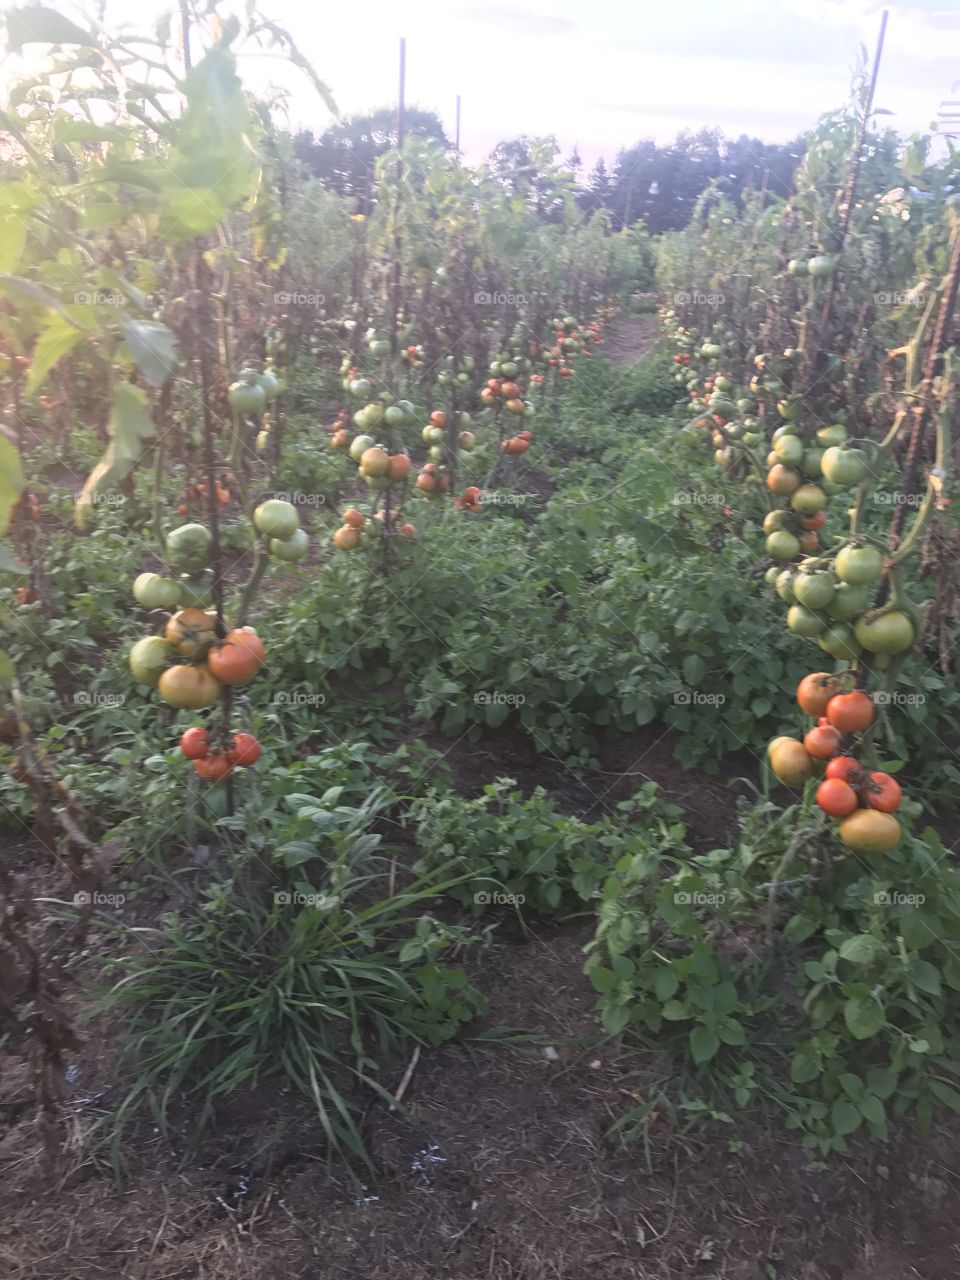 Tomato farm